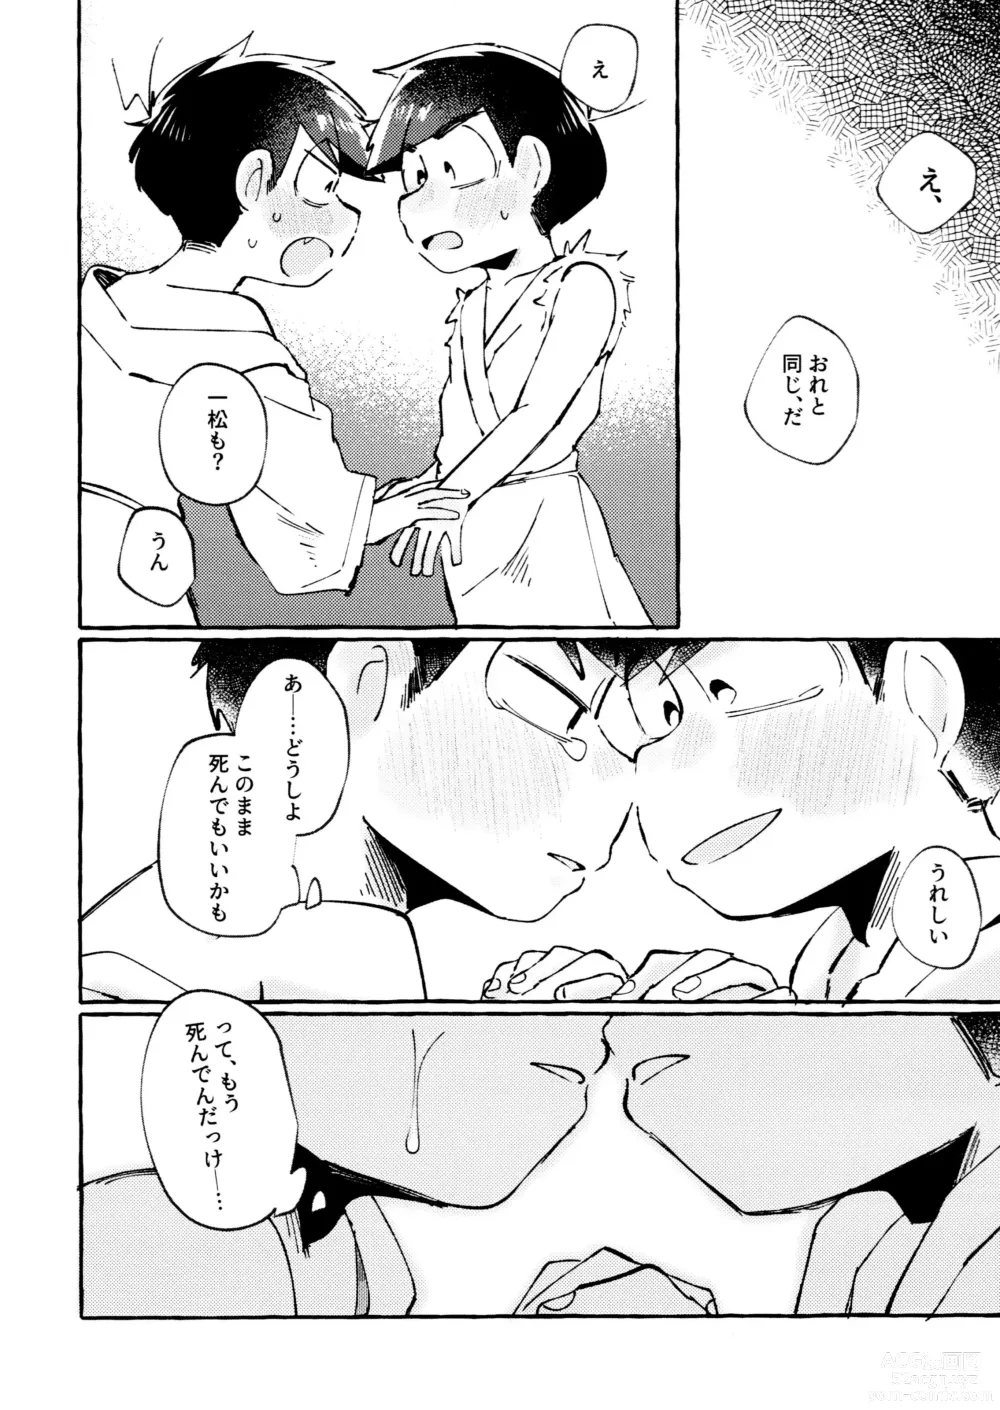 Page 34 of doujinshi sekai o sukueru no wa ore-tachi no ×××!